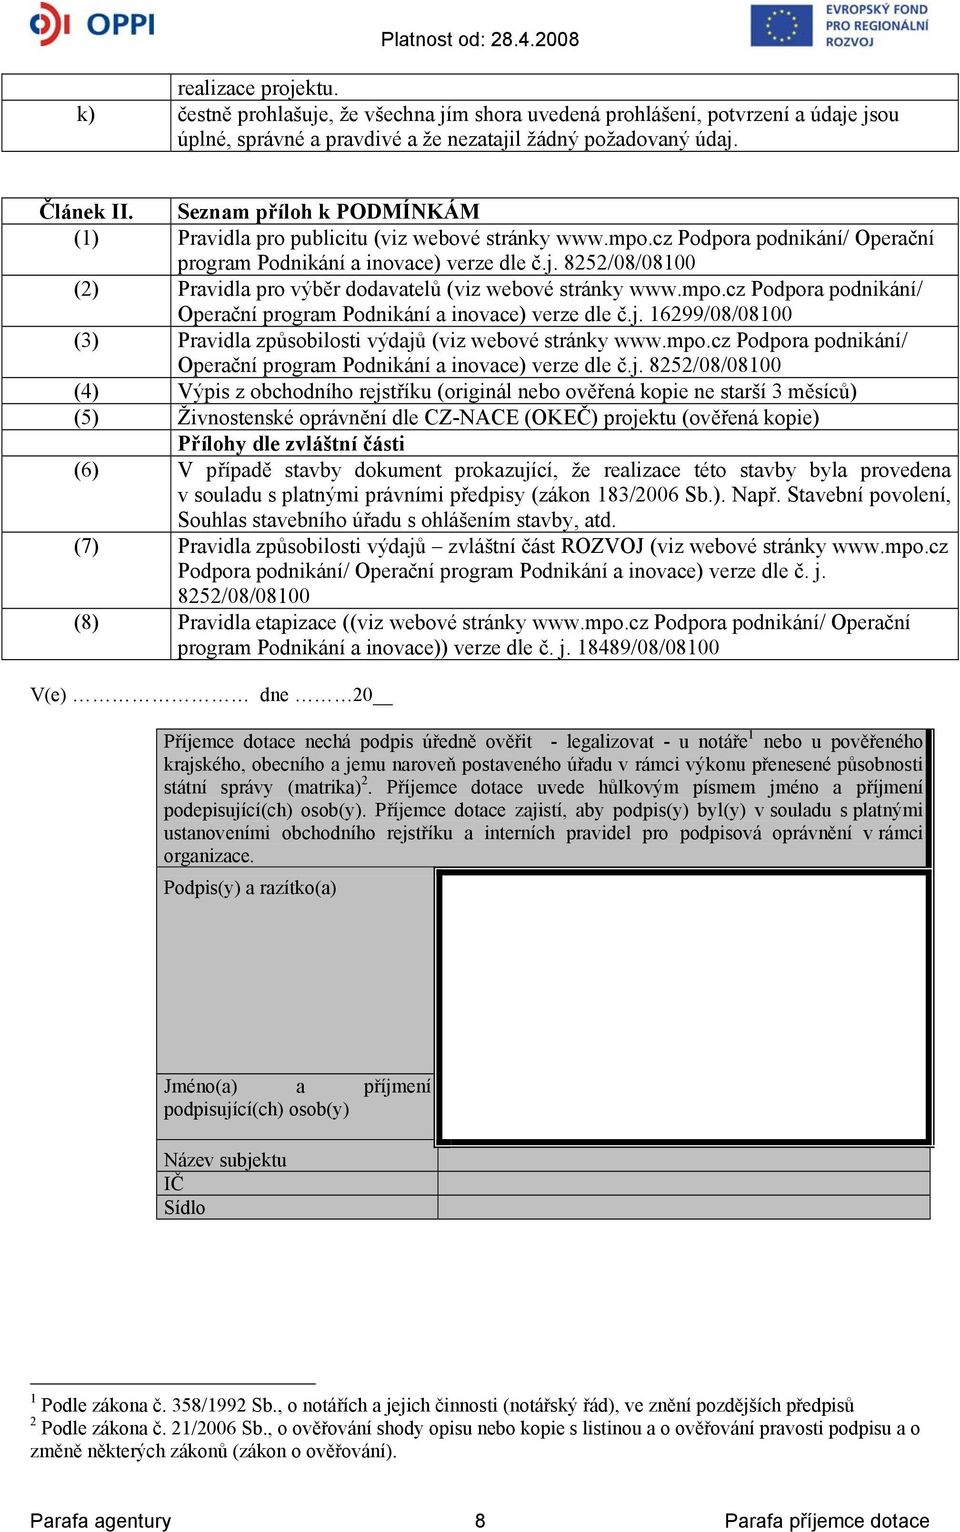 8252/08/08100 (2) Pravidla pro výběr dodavatelů (viz webové stránky www.mpo.cz Podpora podnikání/ Operační program Podnikání a inovace) verze dle č.j.